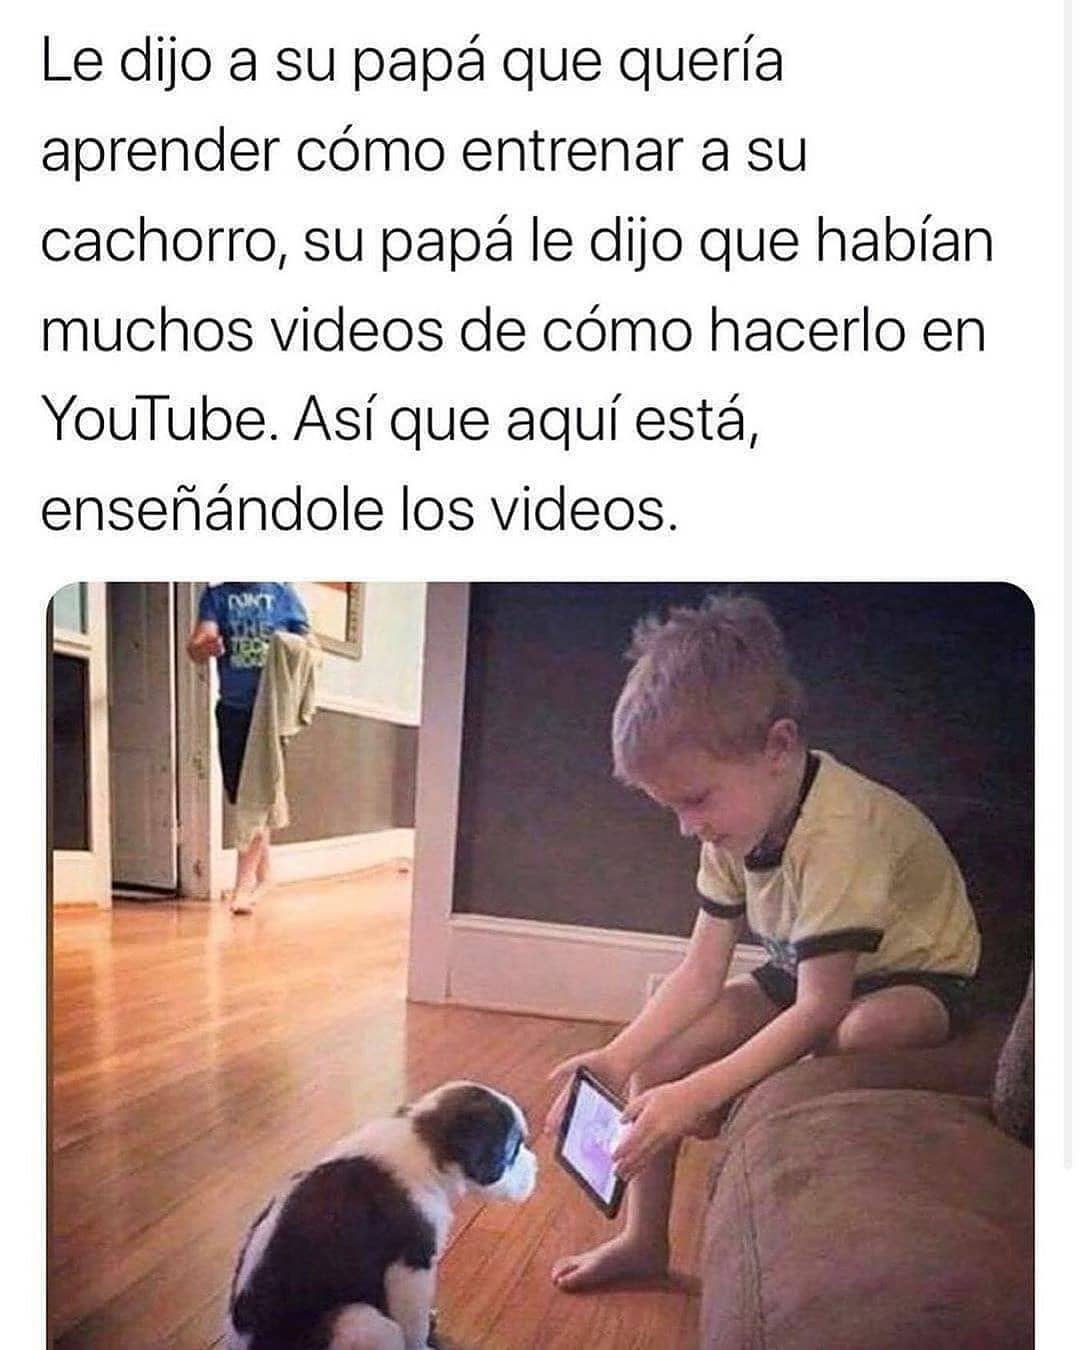 Le dijo a su papá que quería aprender cómo entrenar a su cachorro, su papá le dijo que habían muchos videos de cómo hacerlo en YouTube. Así que aquí está enseñándole los videos.